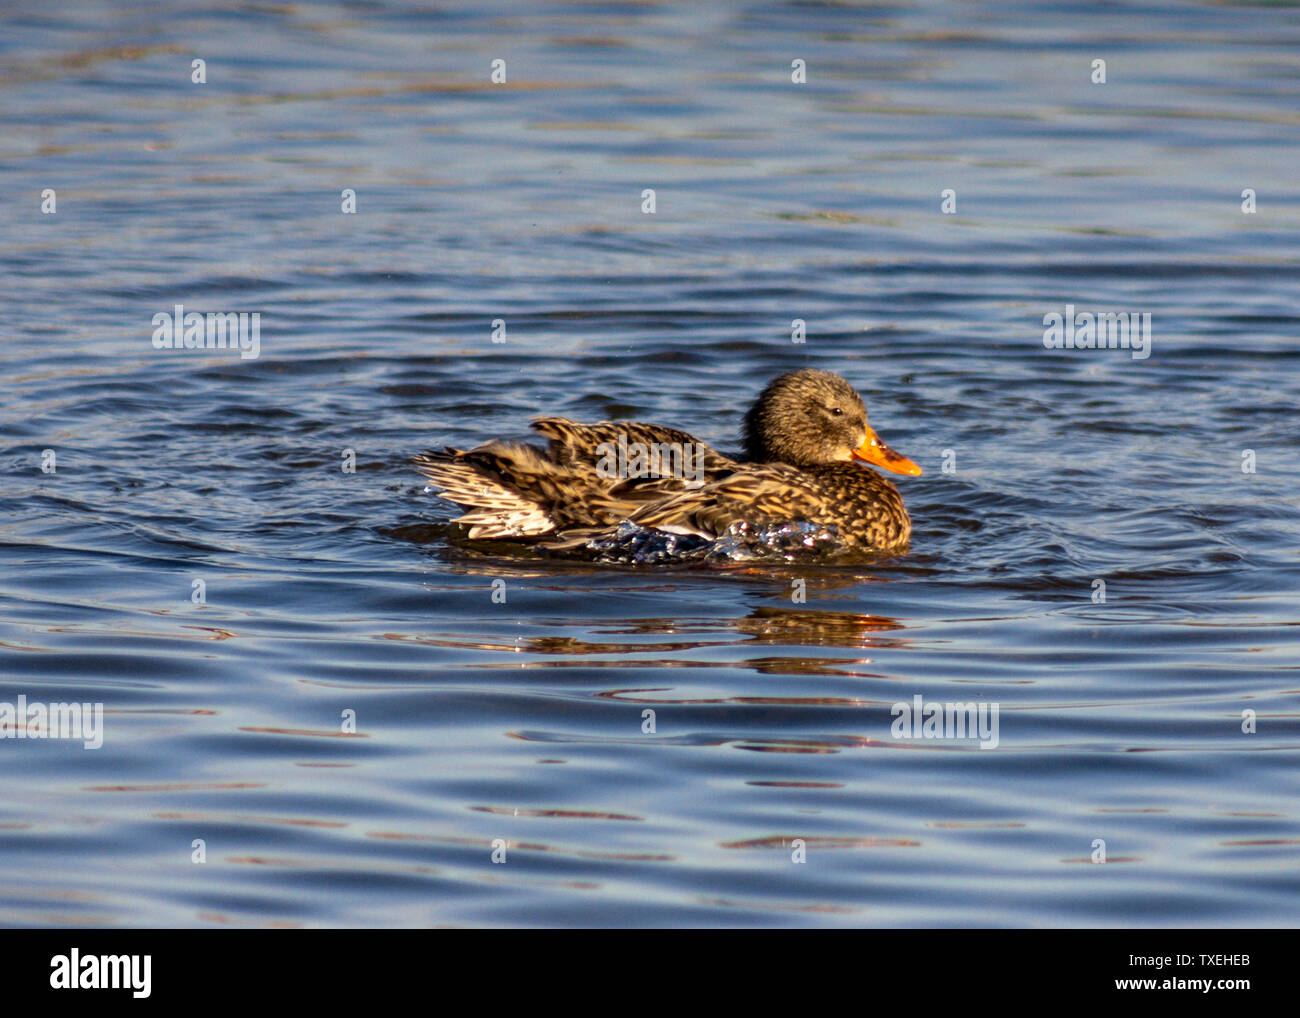 Bellissima femmina Mallard duck nuoto con gonfi piume nel lago. Arancio brillante becco, distinto ala blu stripe. Immagine invernale, acqua blu Foto Stock